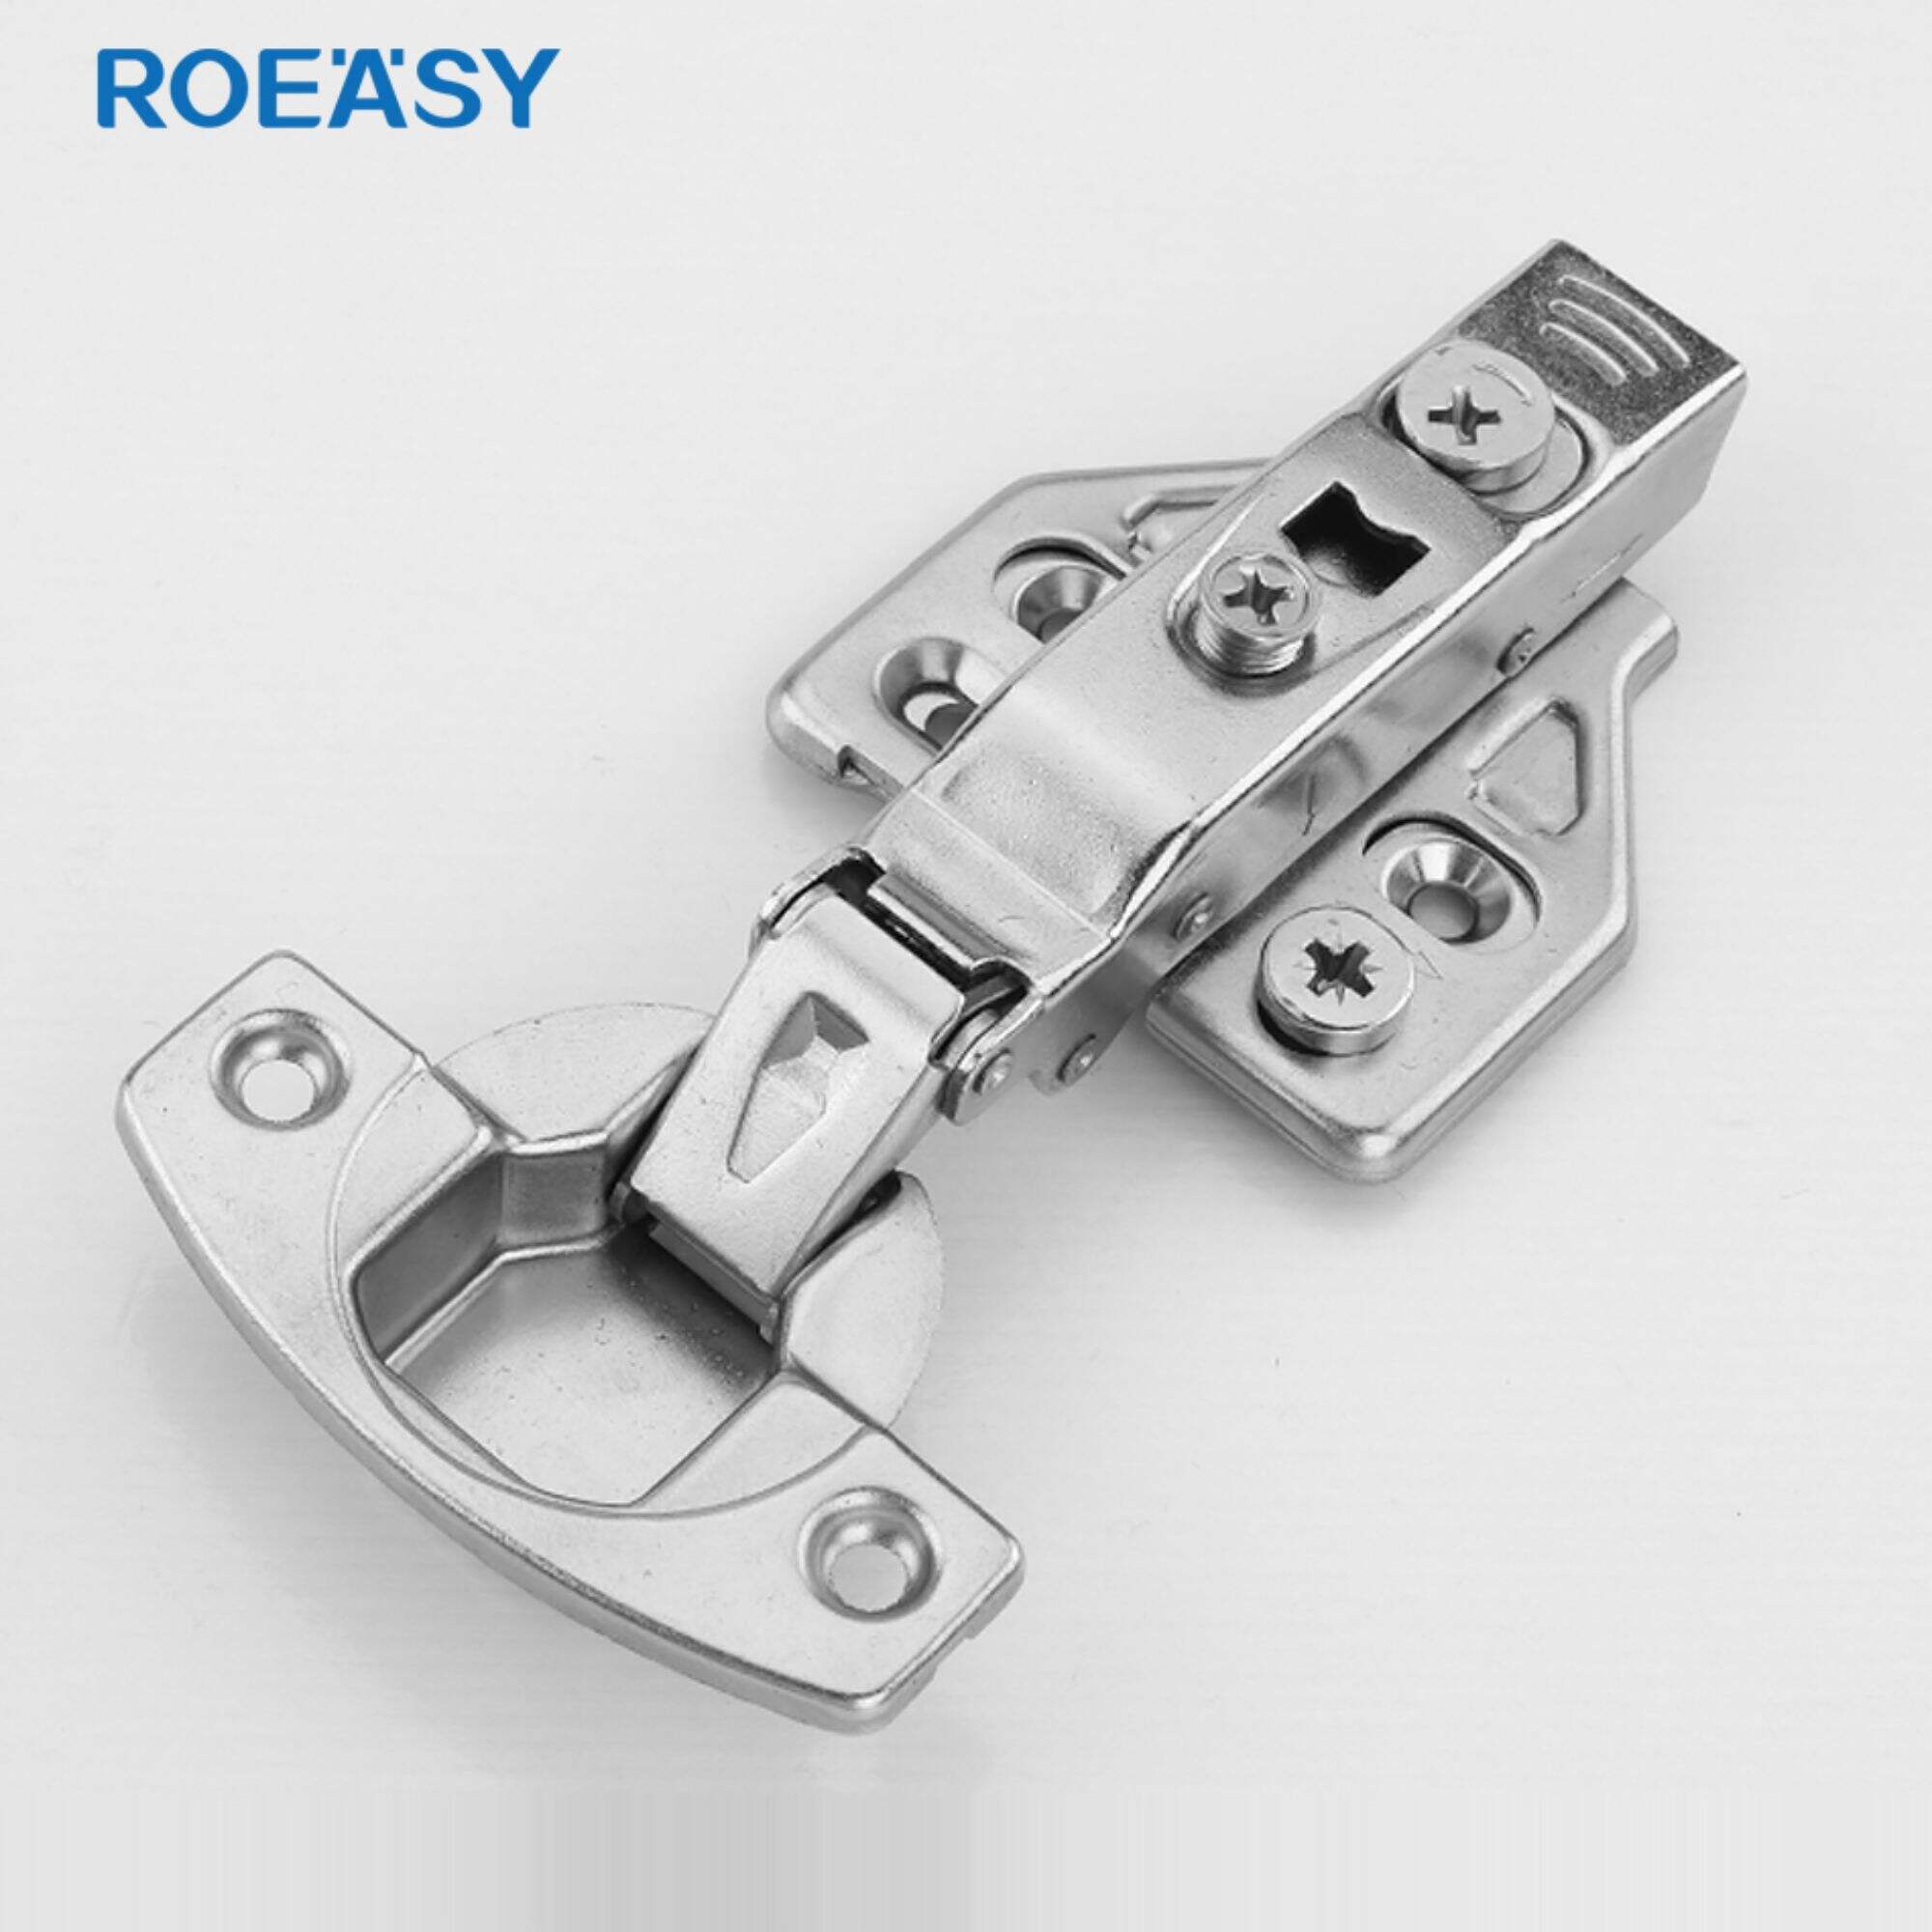 ROEASY CH-273A-3D 3D reguleerimisliigend 9.5 mm paksune hüdrosilindri pehme sulgemine, raskeveokite 35 mm tassi kapi liigend